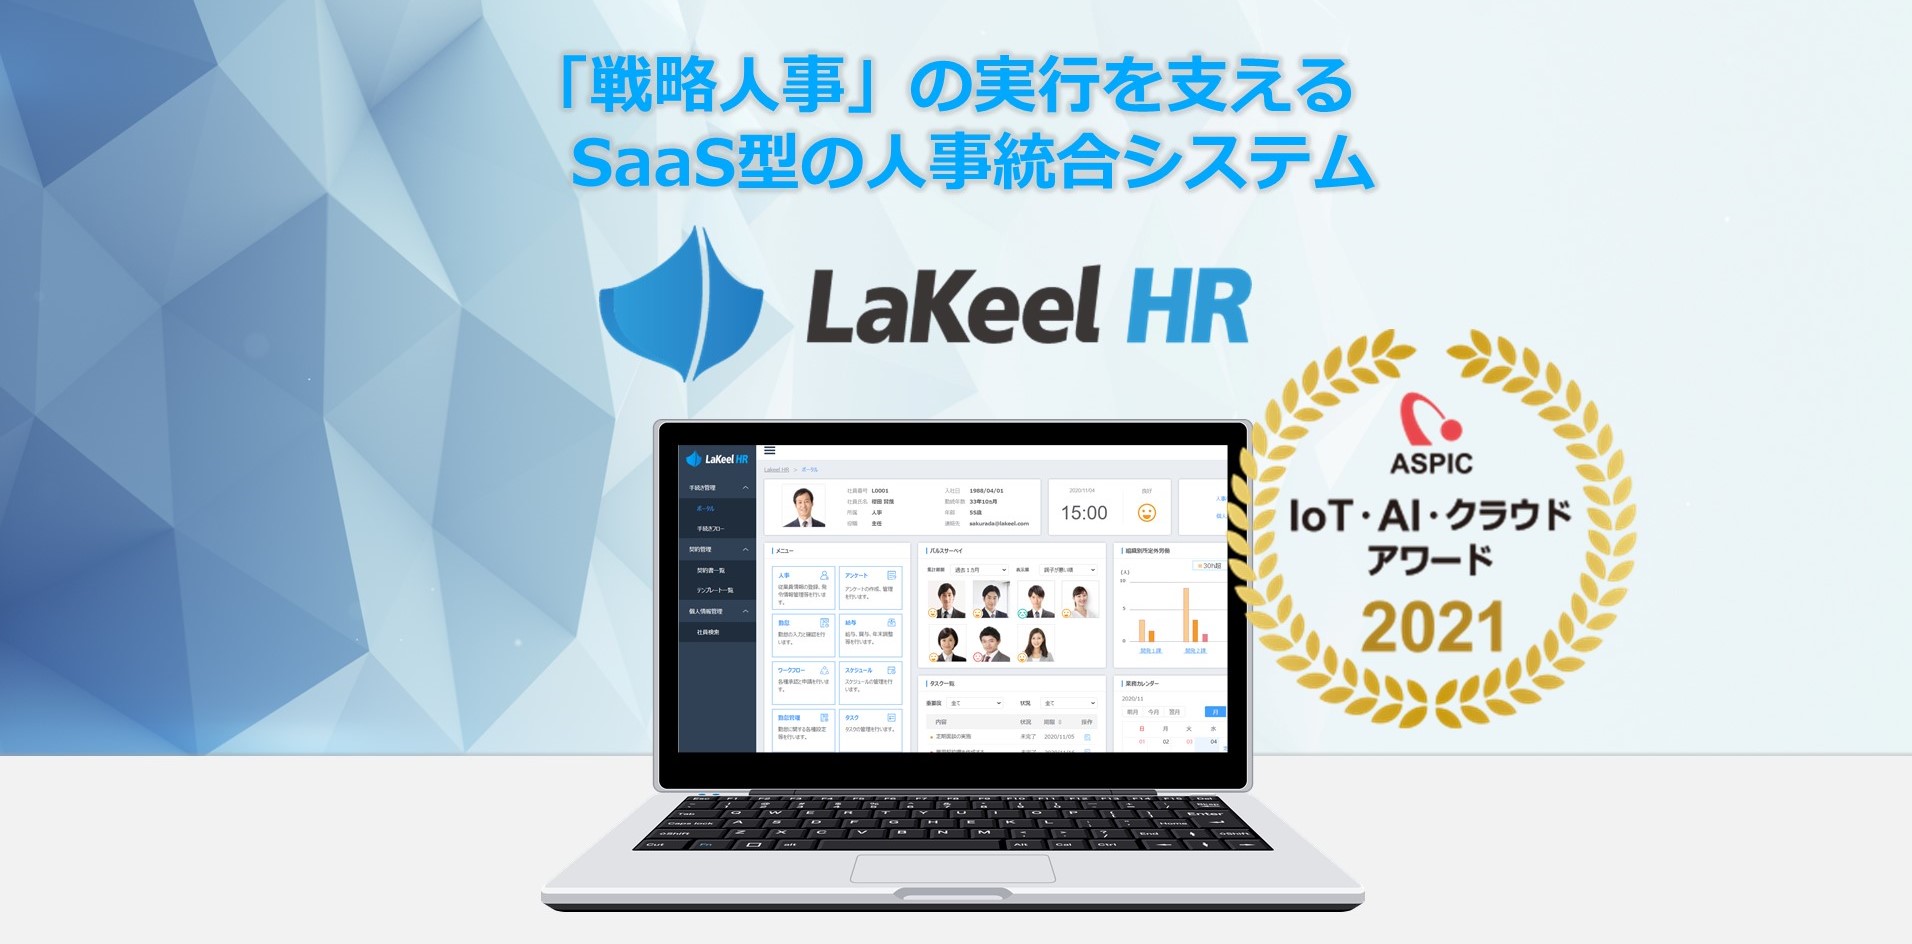 総務省後援『ASPIC IoT・AI・クラウドアワード2021』にて、 SaaS型人事統合システム「LaKeel HR」が受賞